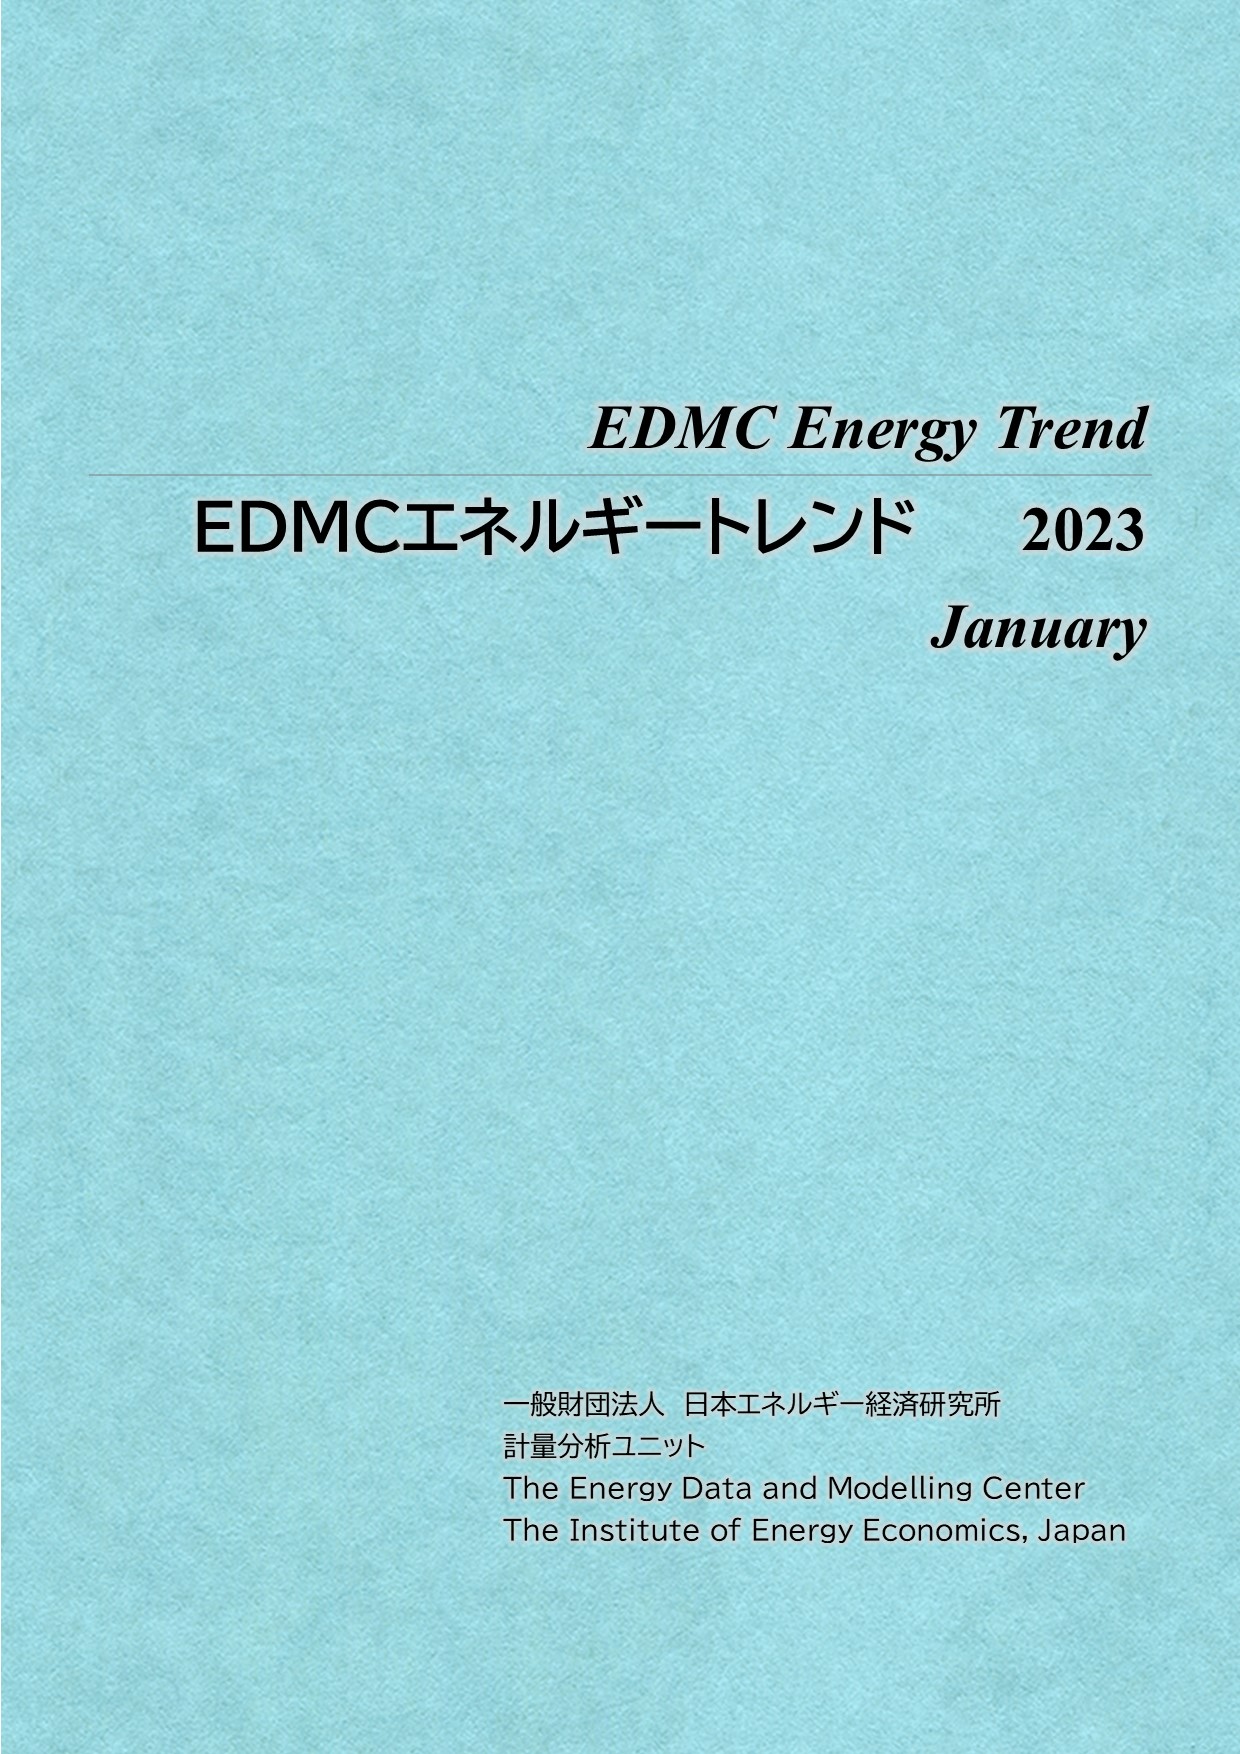 EDMC Energy Trend